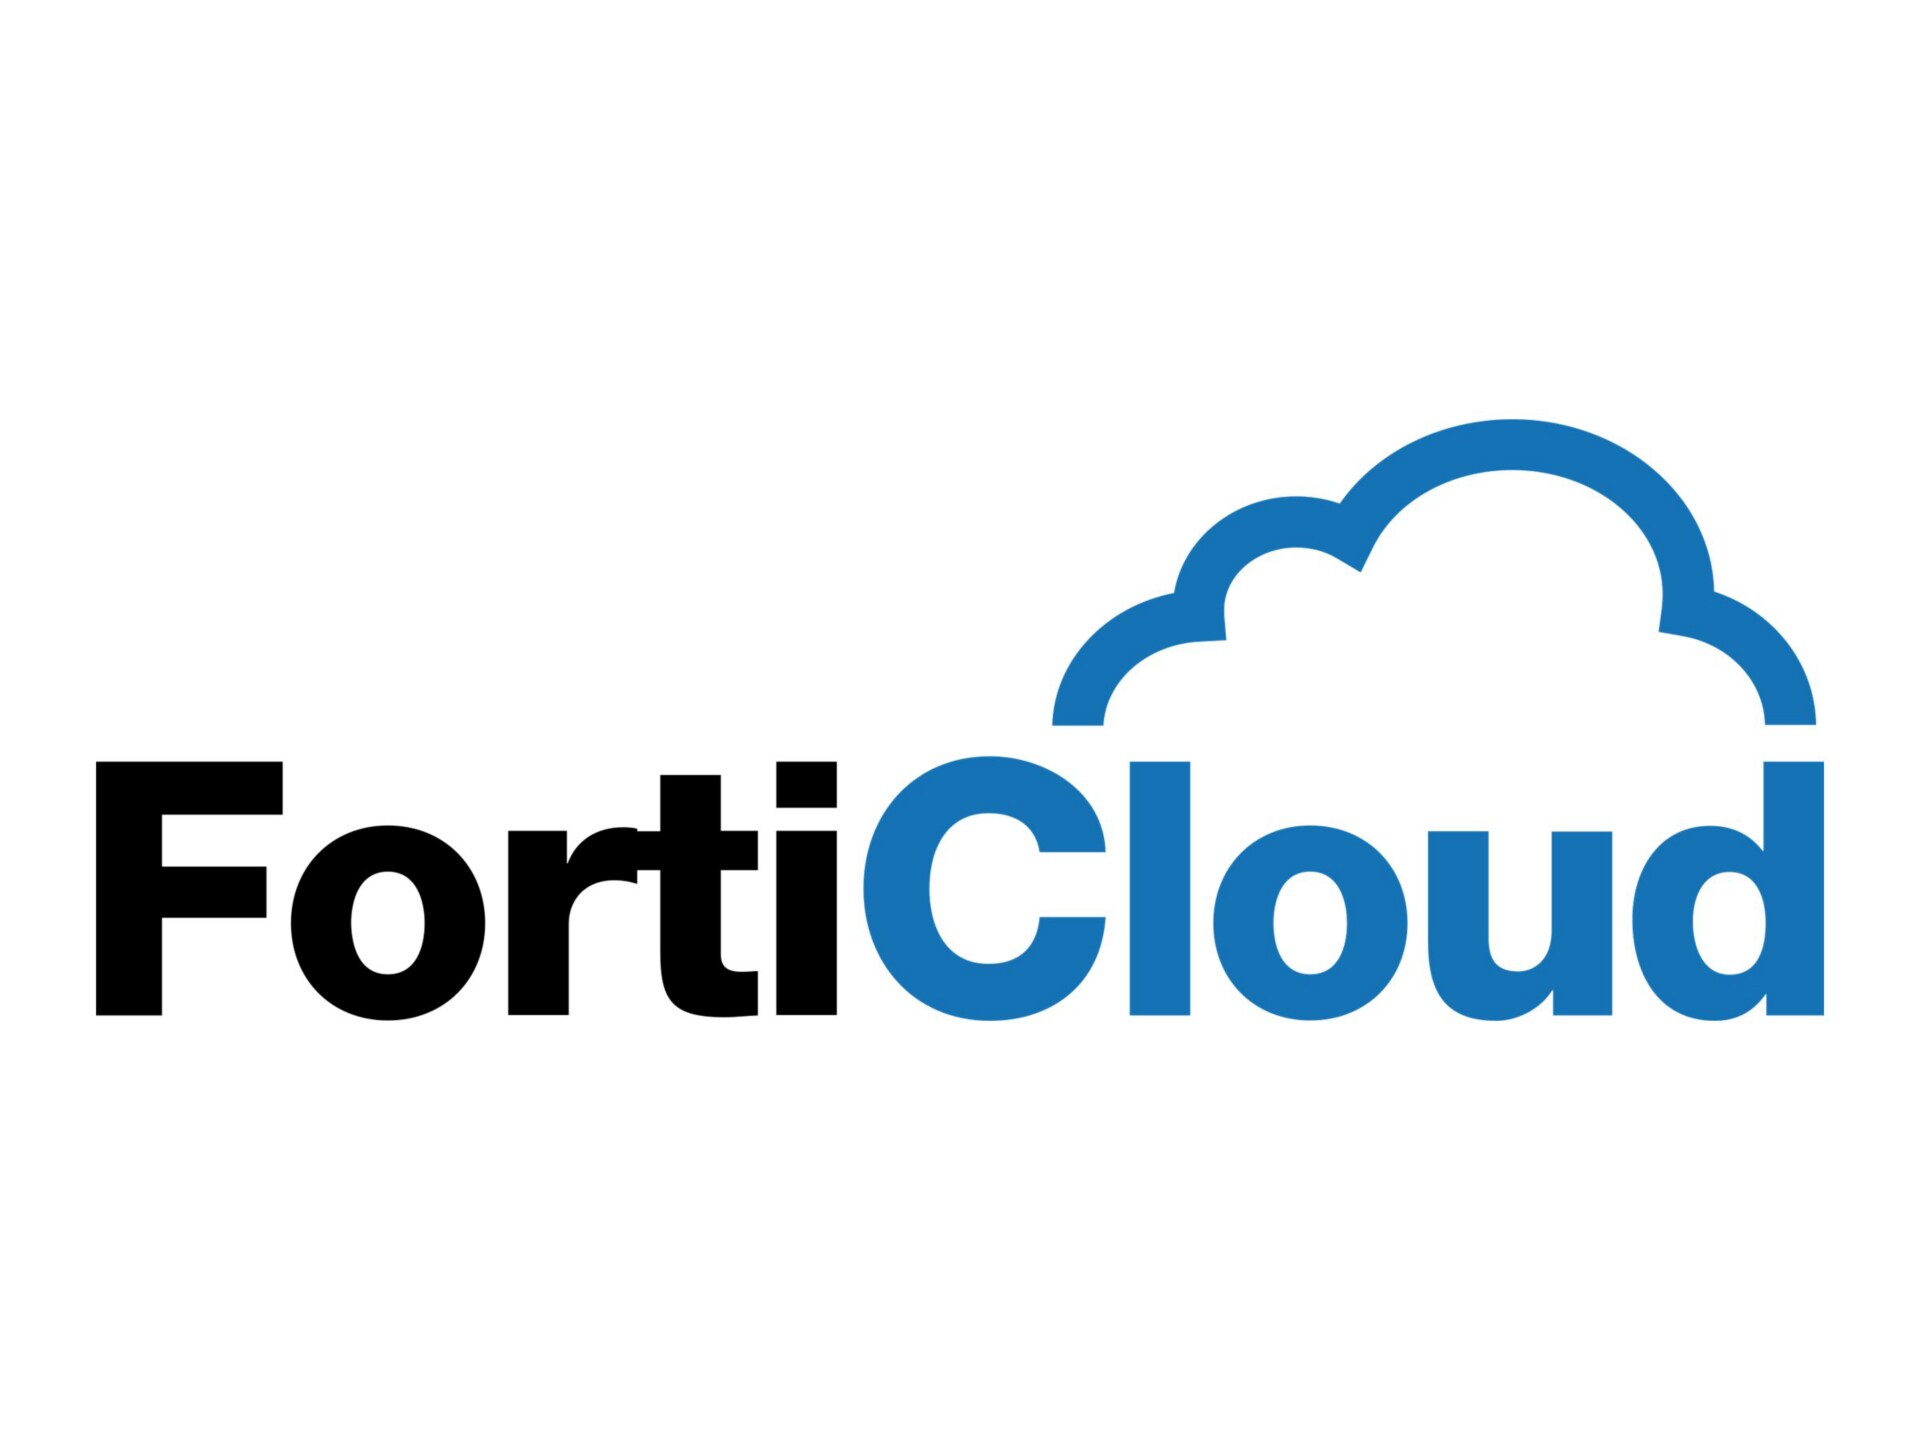 FortiToken Cloud – renouvellement de licence d’abonnement (1 an) + FortiCare 24x7 – maximum 2